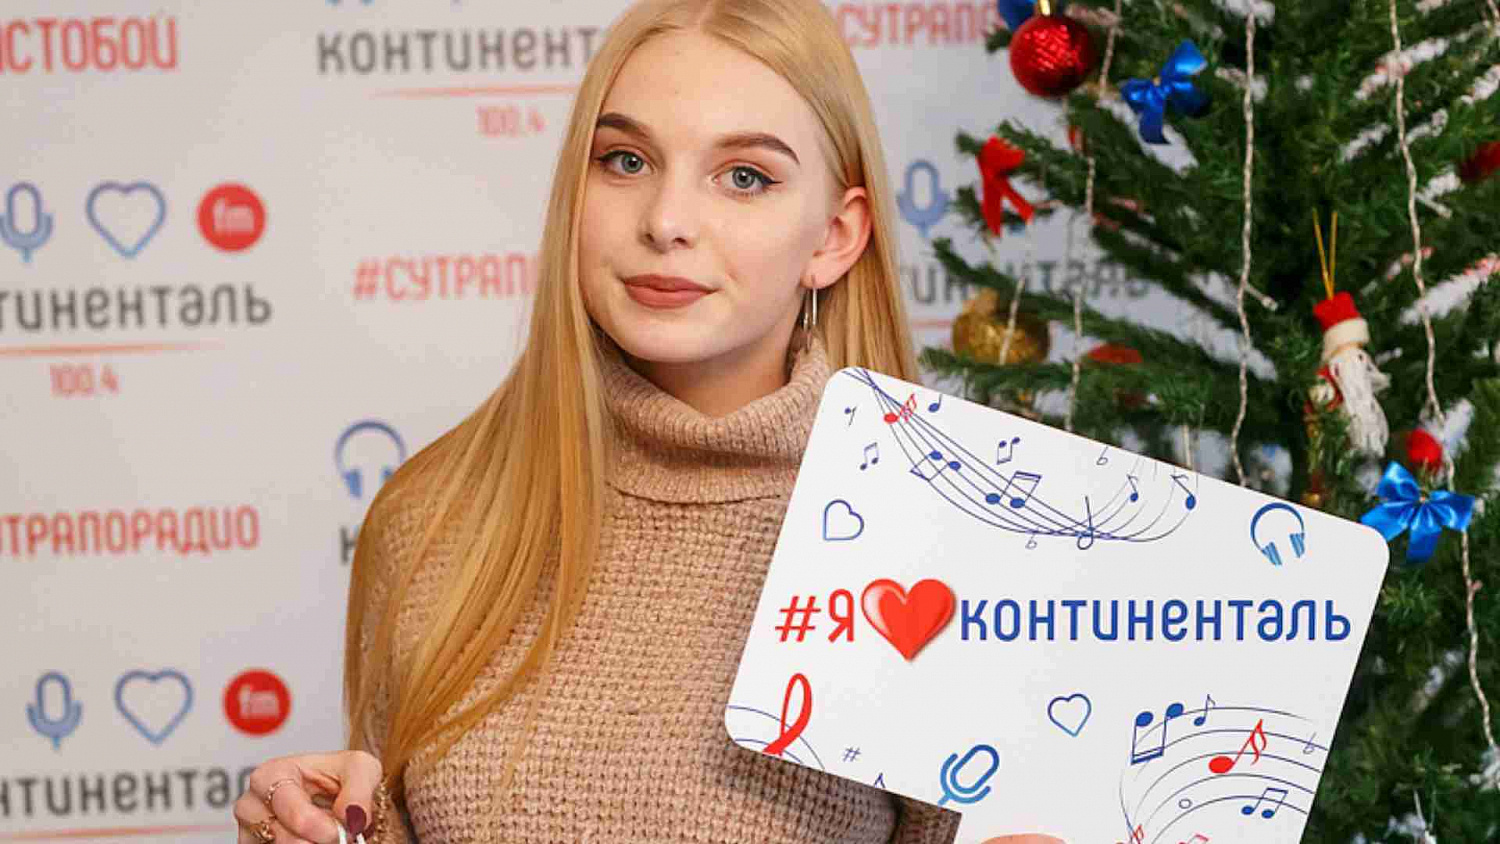 Более 100 тысяч рублей радио «Континенталь» подарило челябинцам за ёлочные игрушки!